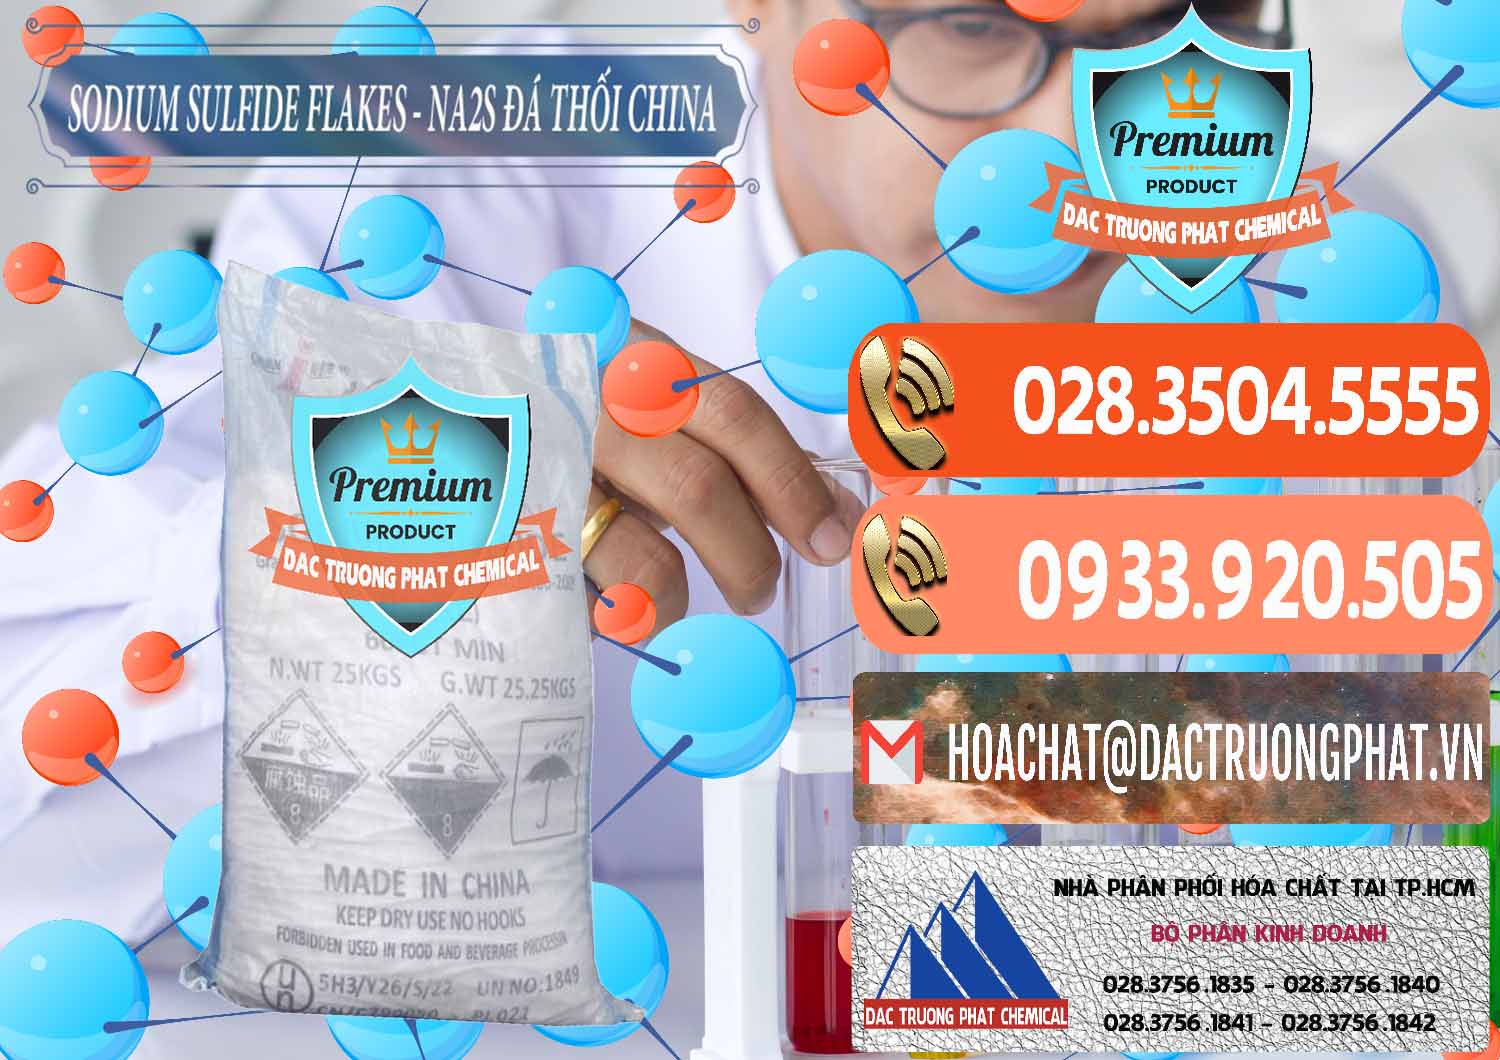 Công ty chuyên kinh doanh và bán Sodium Sulfide NA2S – Đá Thối Liyuan Trung Quốc China - 0385 - Nhà cung ứng và phân phối hóa chất tại TP.HCM - hoachatmientay.com